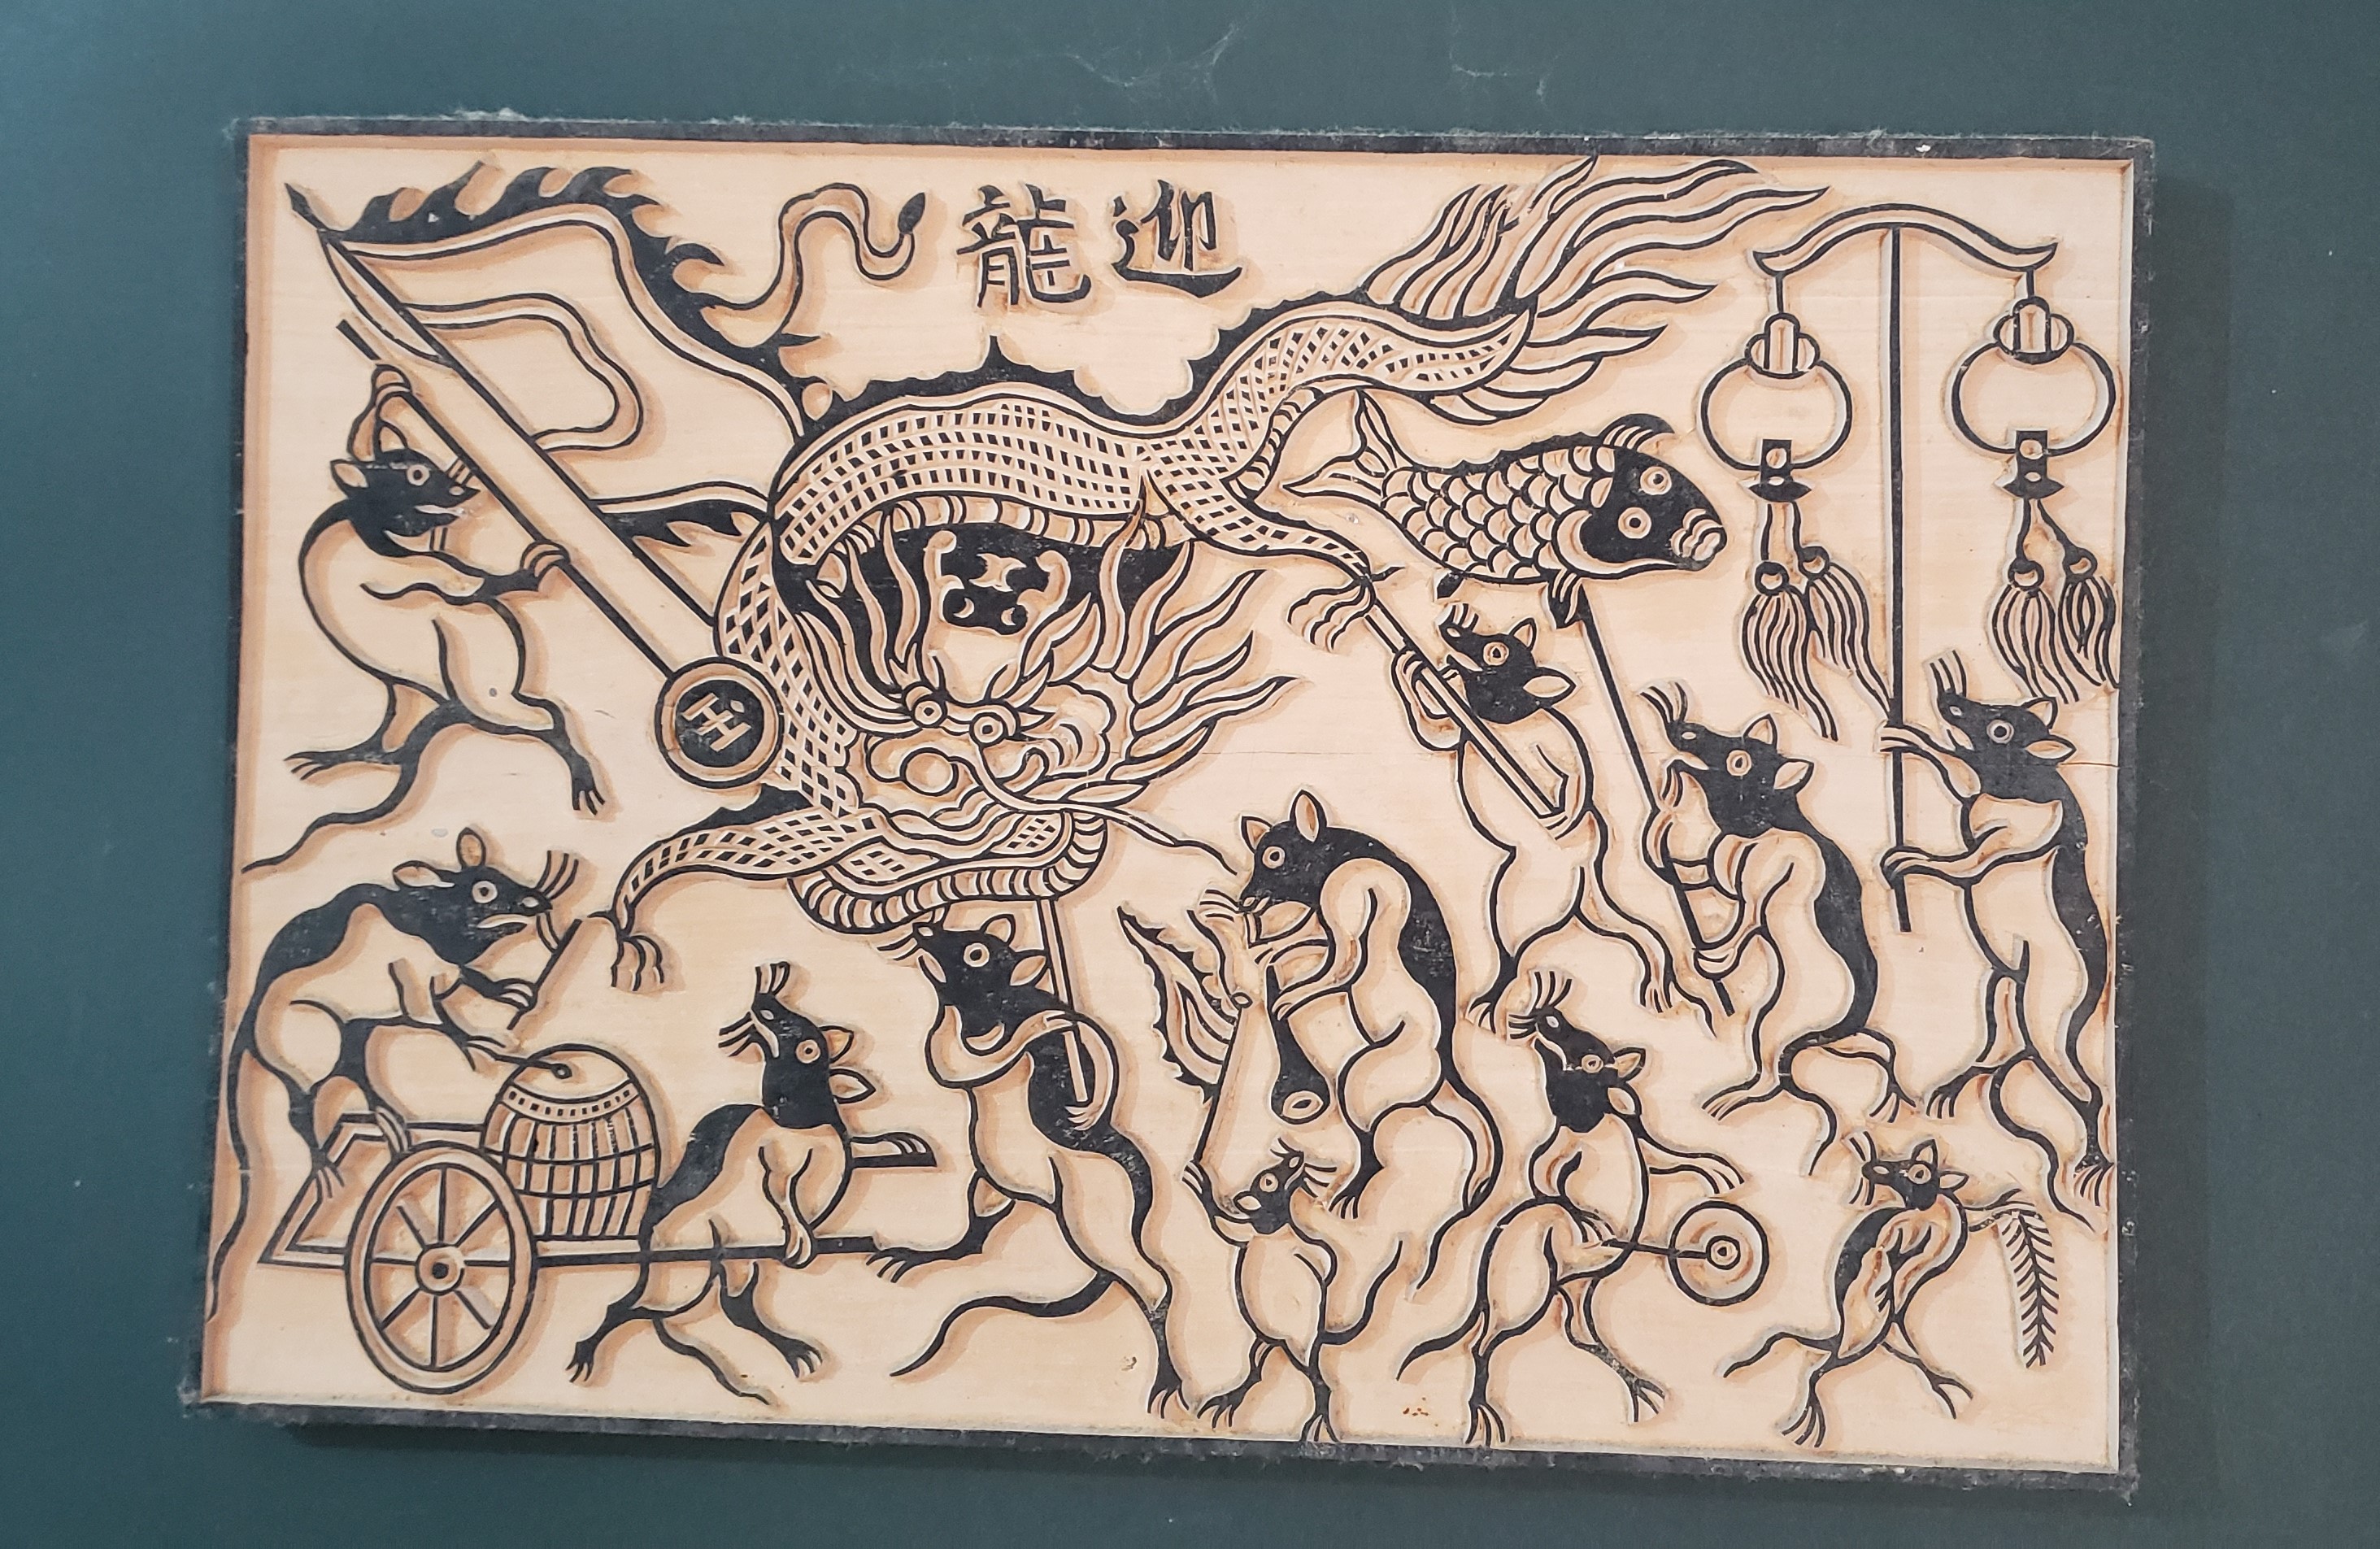 东湖民间画作品《迎龙》的木刻变体。越通社记者 徐碧玉 摄